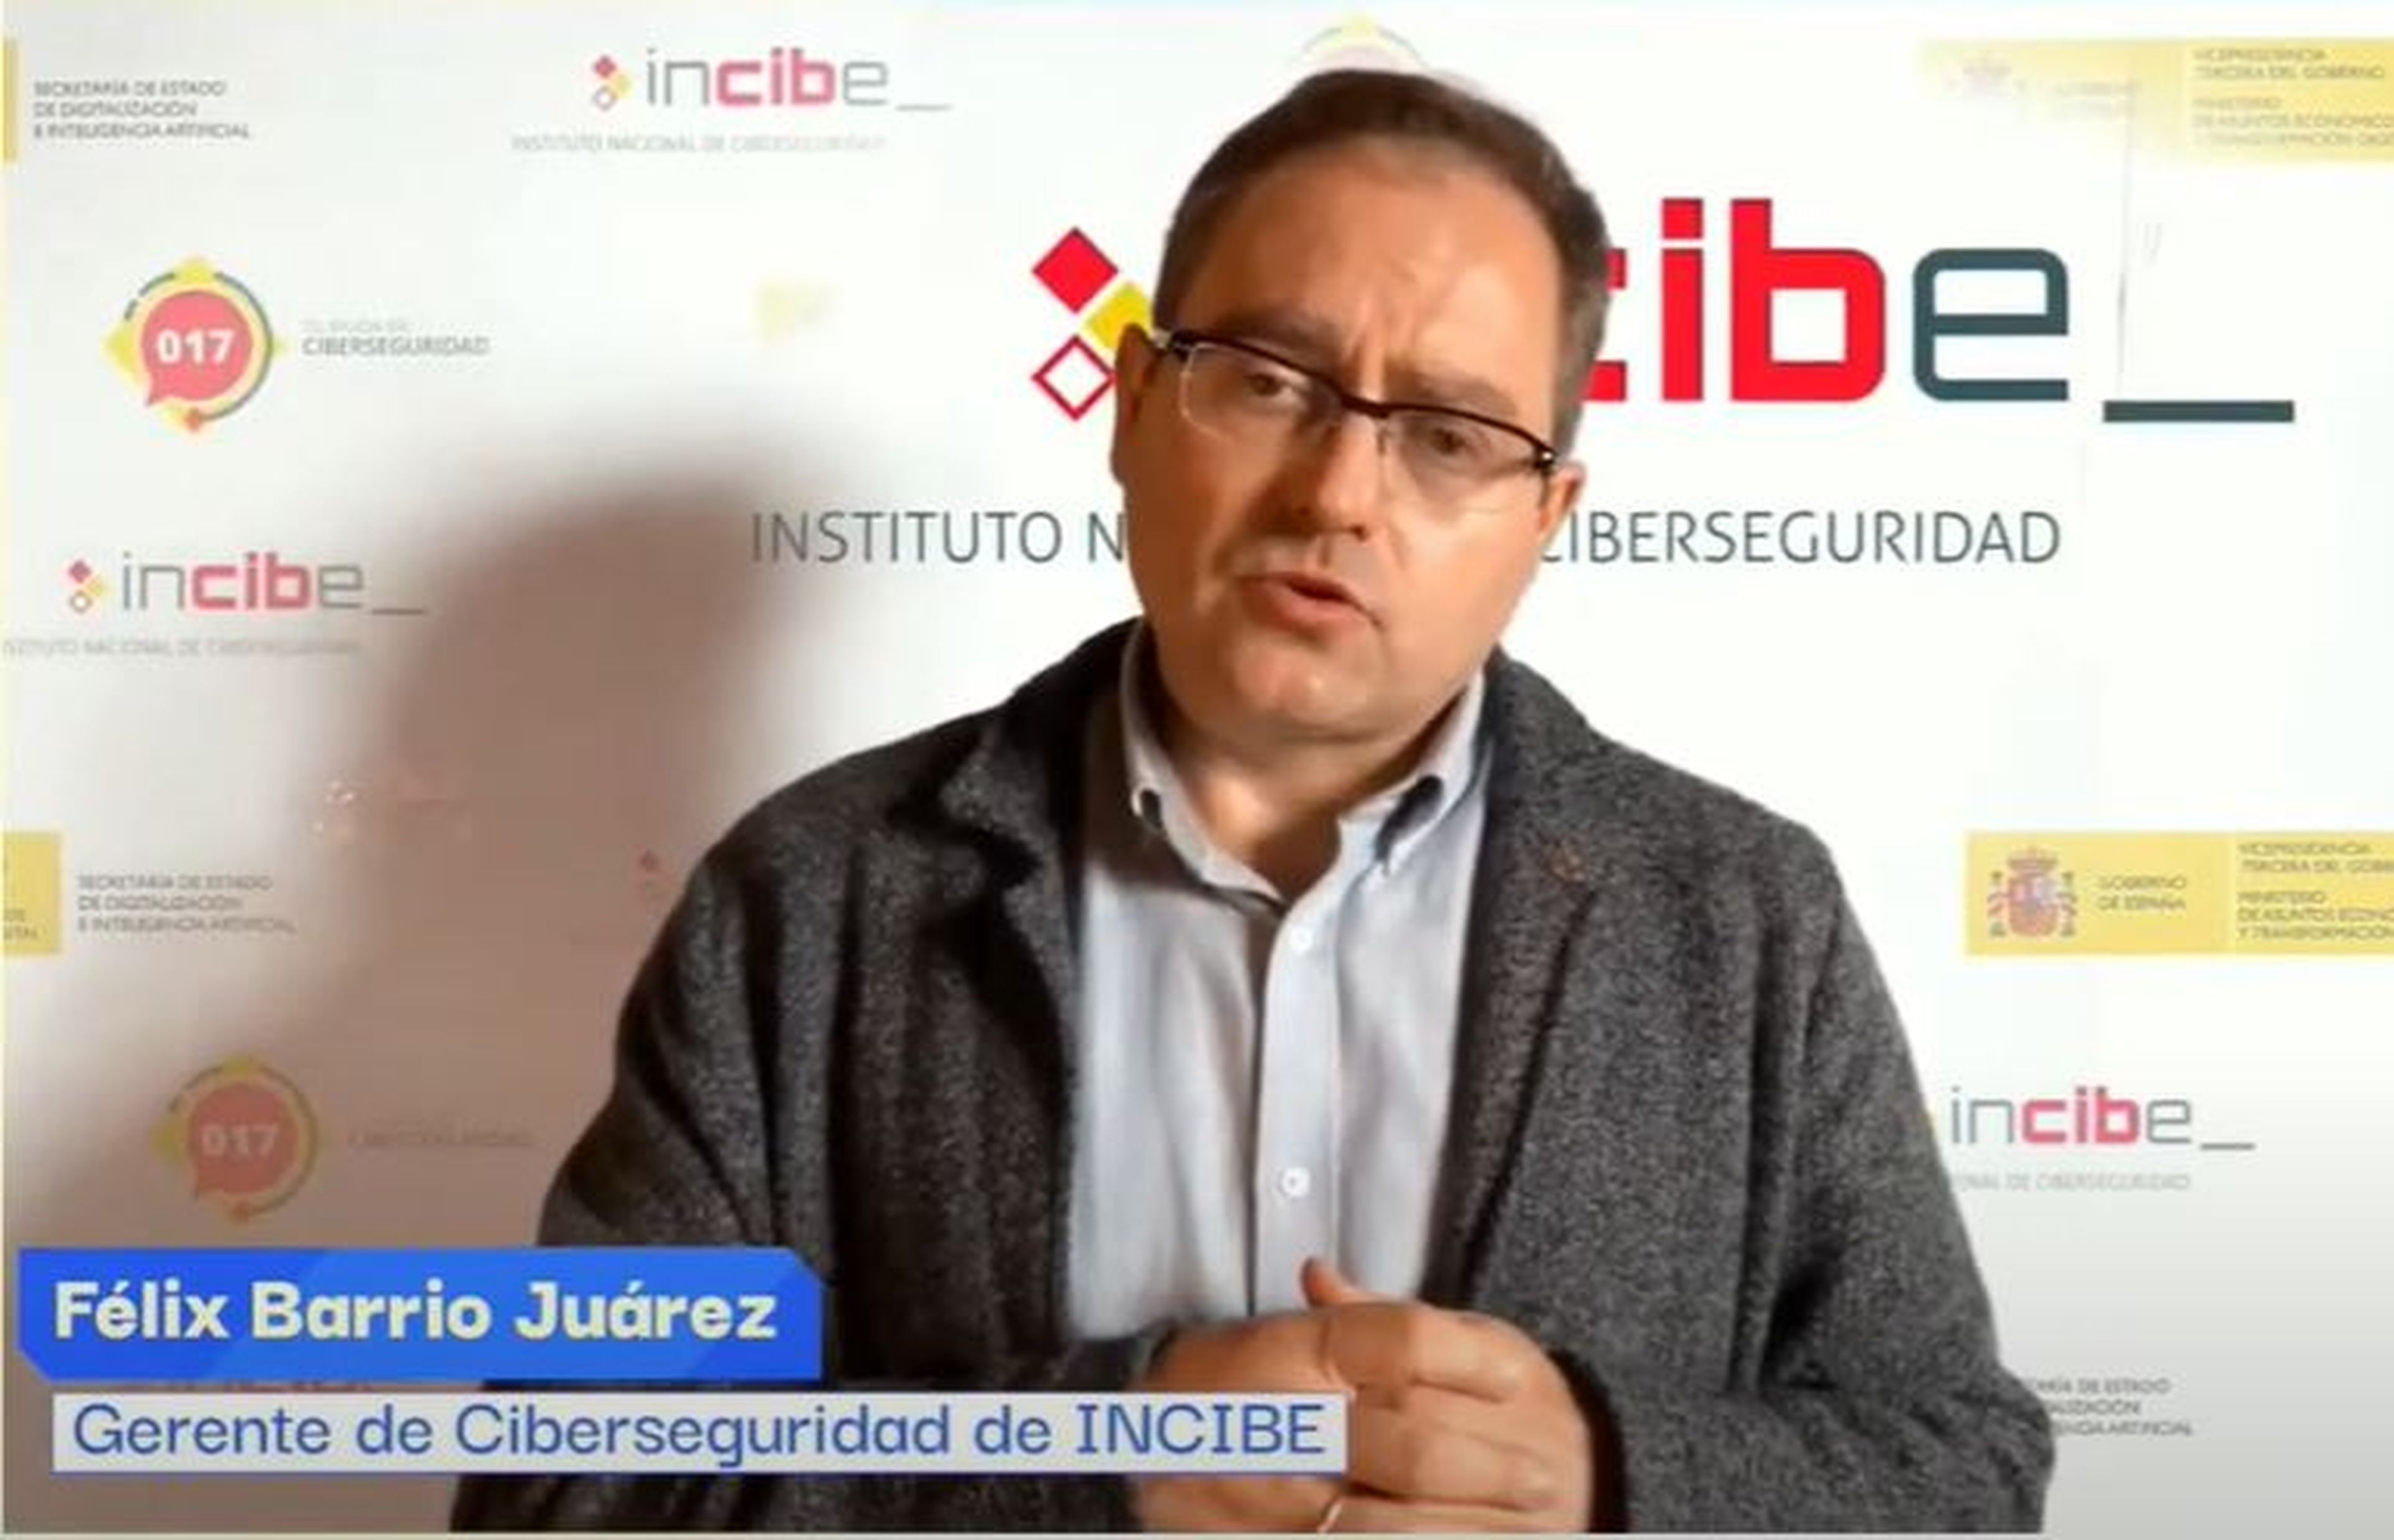 Félix Barrio Juárez, gerente de Ciberseguridad de INCIBE, durante su presentación.